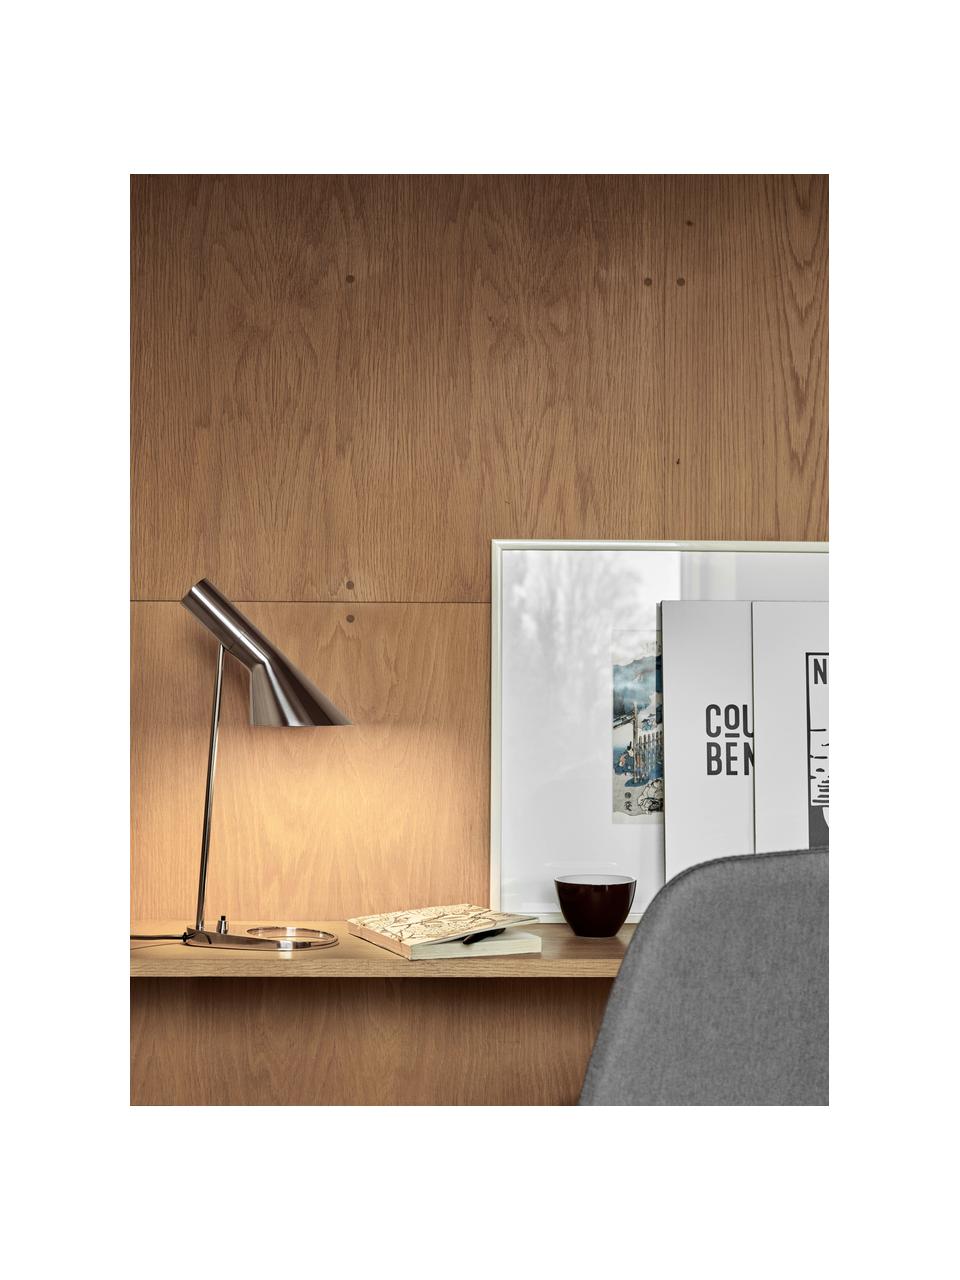 Lampa biurkowa AJ, różne rozmiary, Odcienie srebrnego, S 35 x W 56 cm